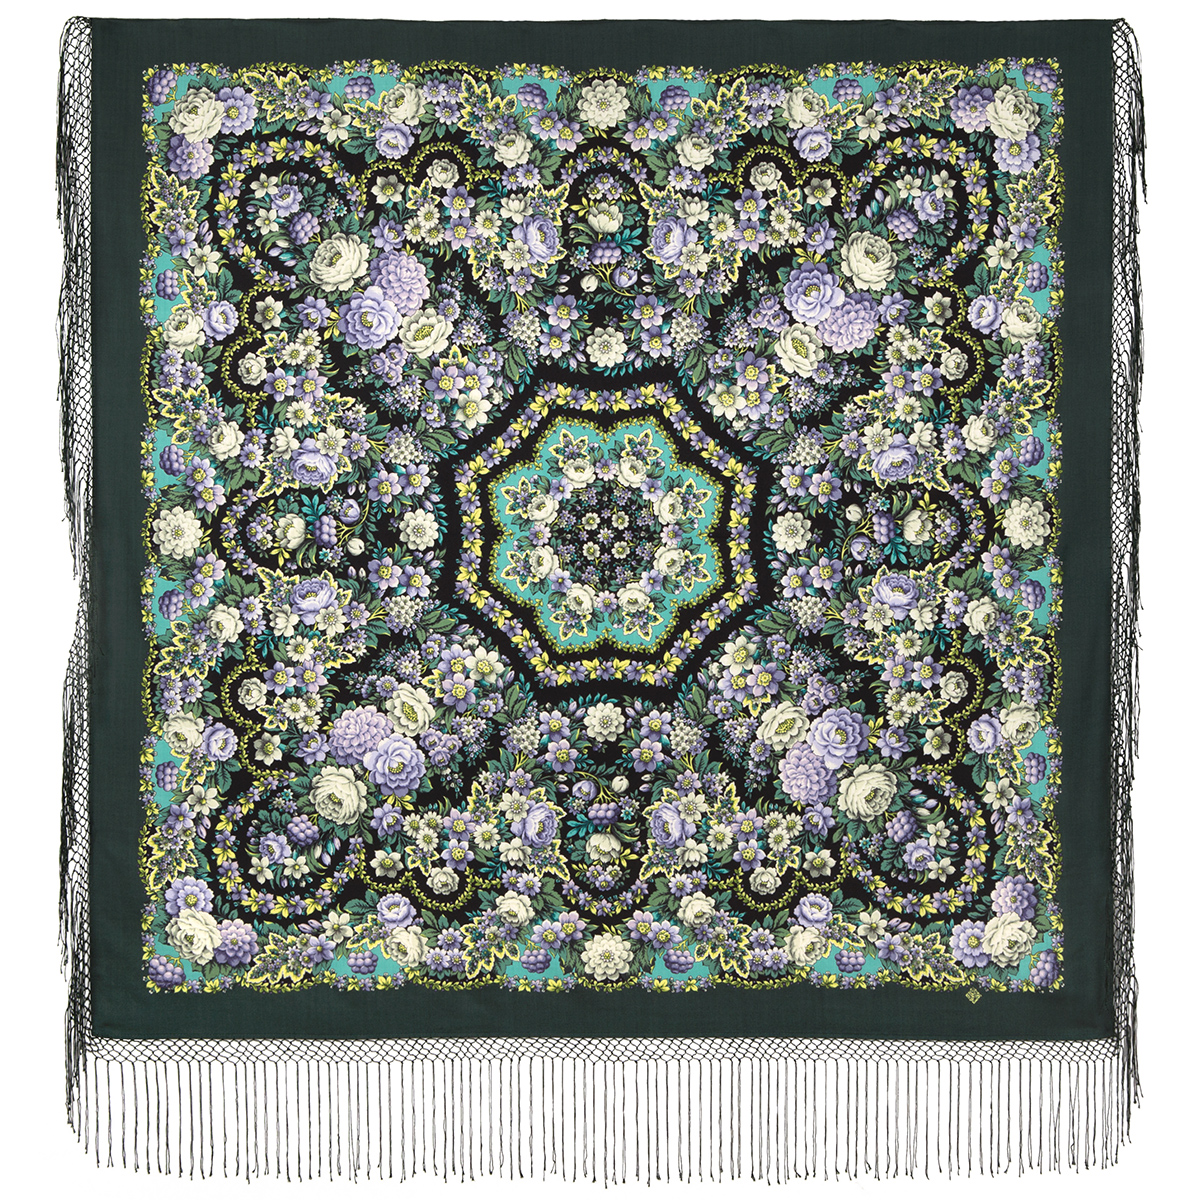 Платок женский Павловопосадский платок 1816 зеленый, 148х148 см